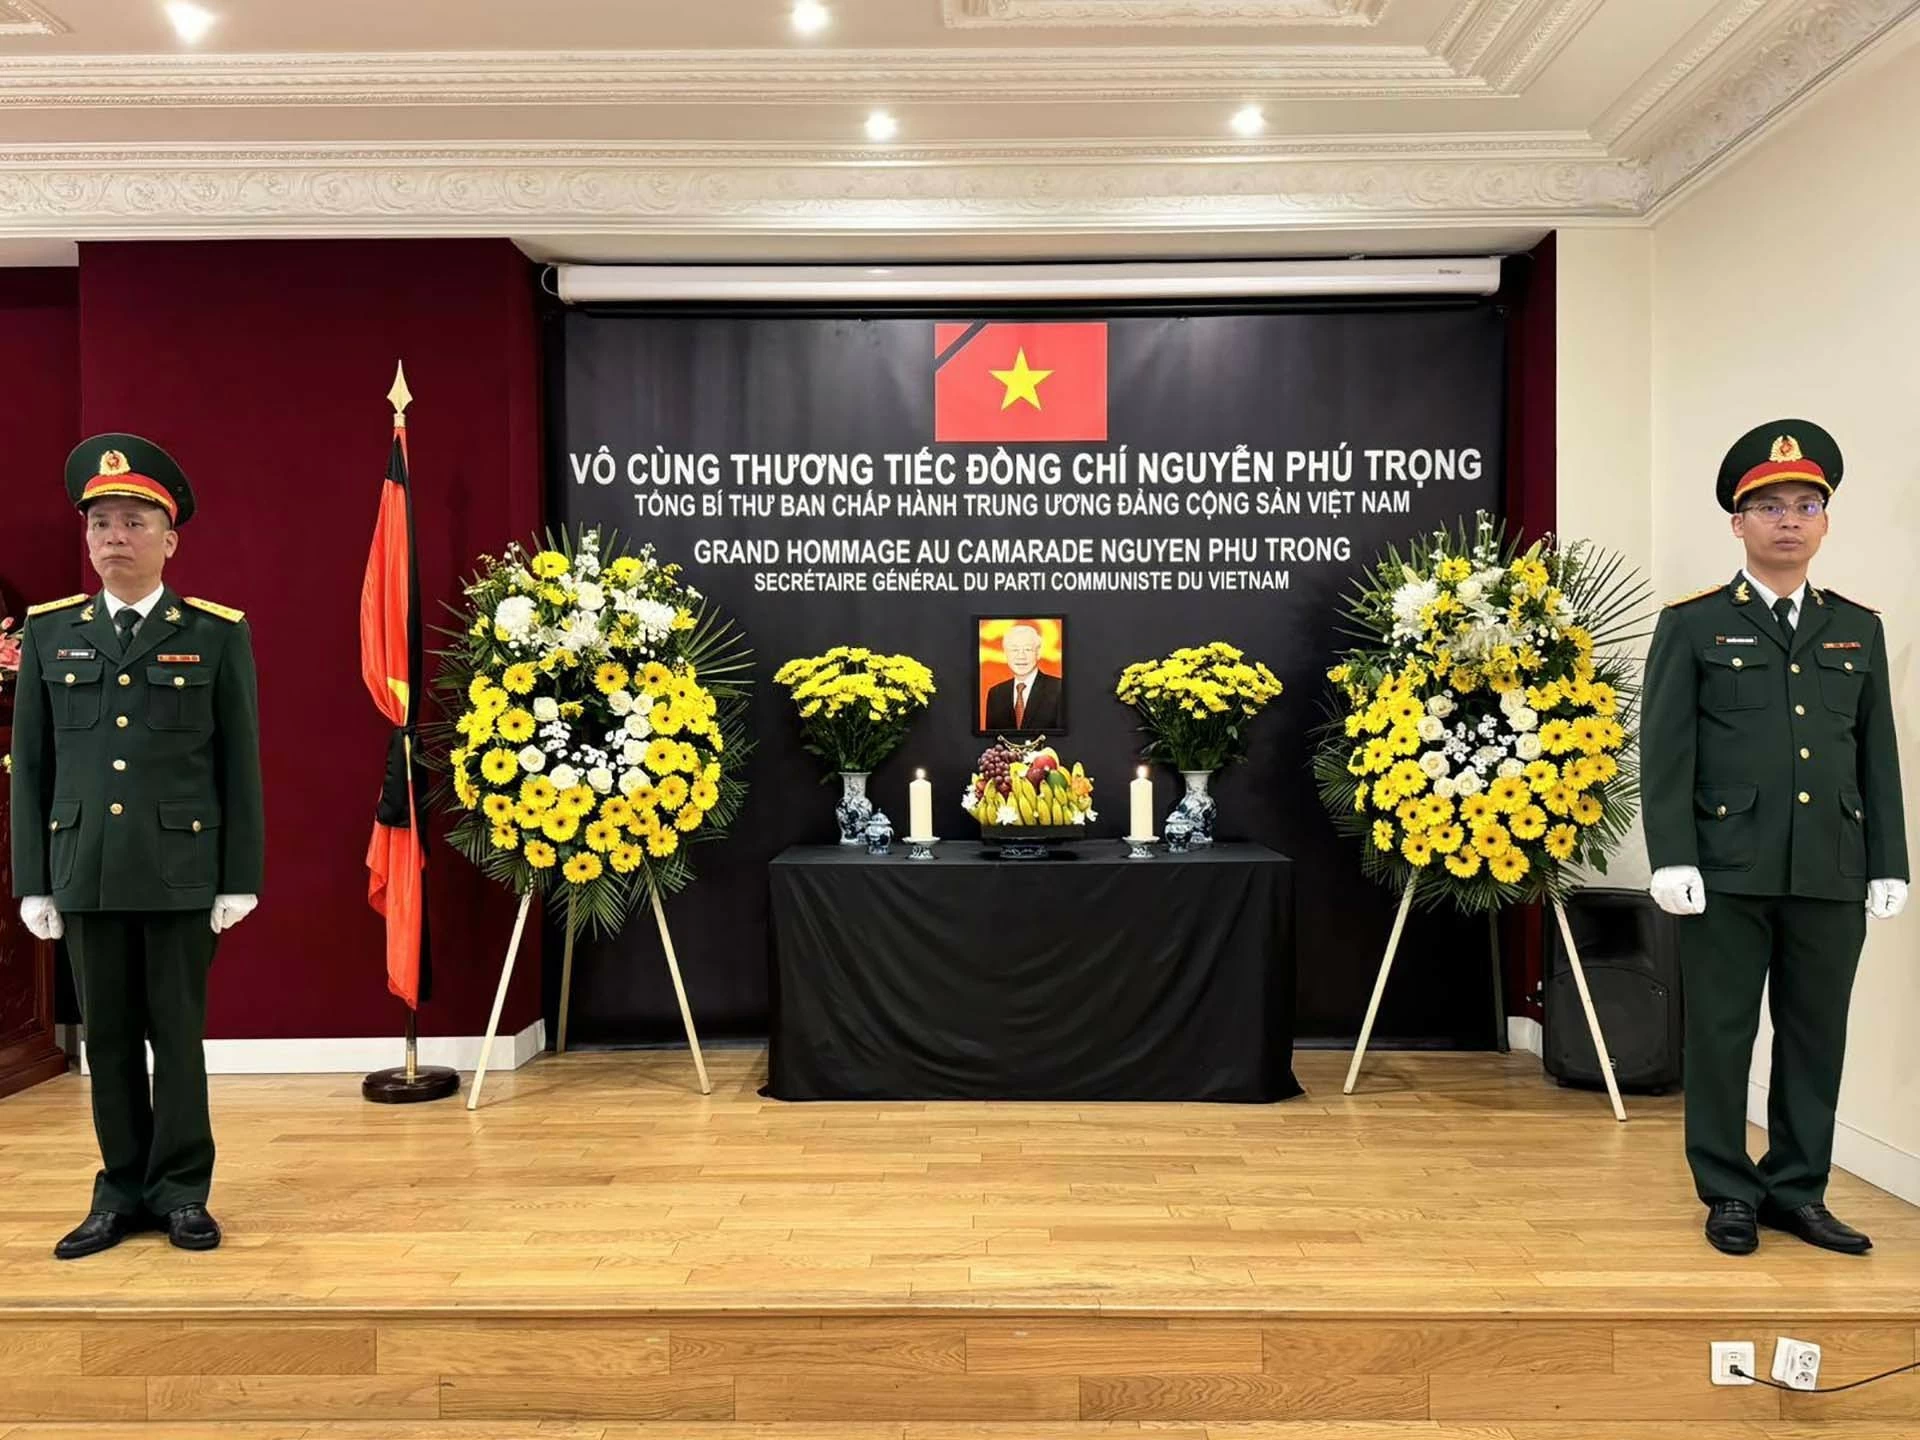 Bạn bè quốc tế và người Việt tại Pháp bày tỏ sự kính trọng và niềm tiếc thương sâu sắc đối với Tổng Bí thư Nguyễn Phú Trọng